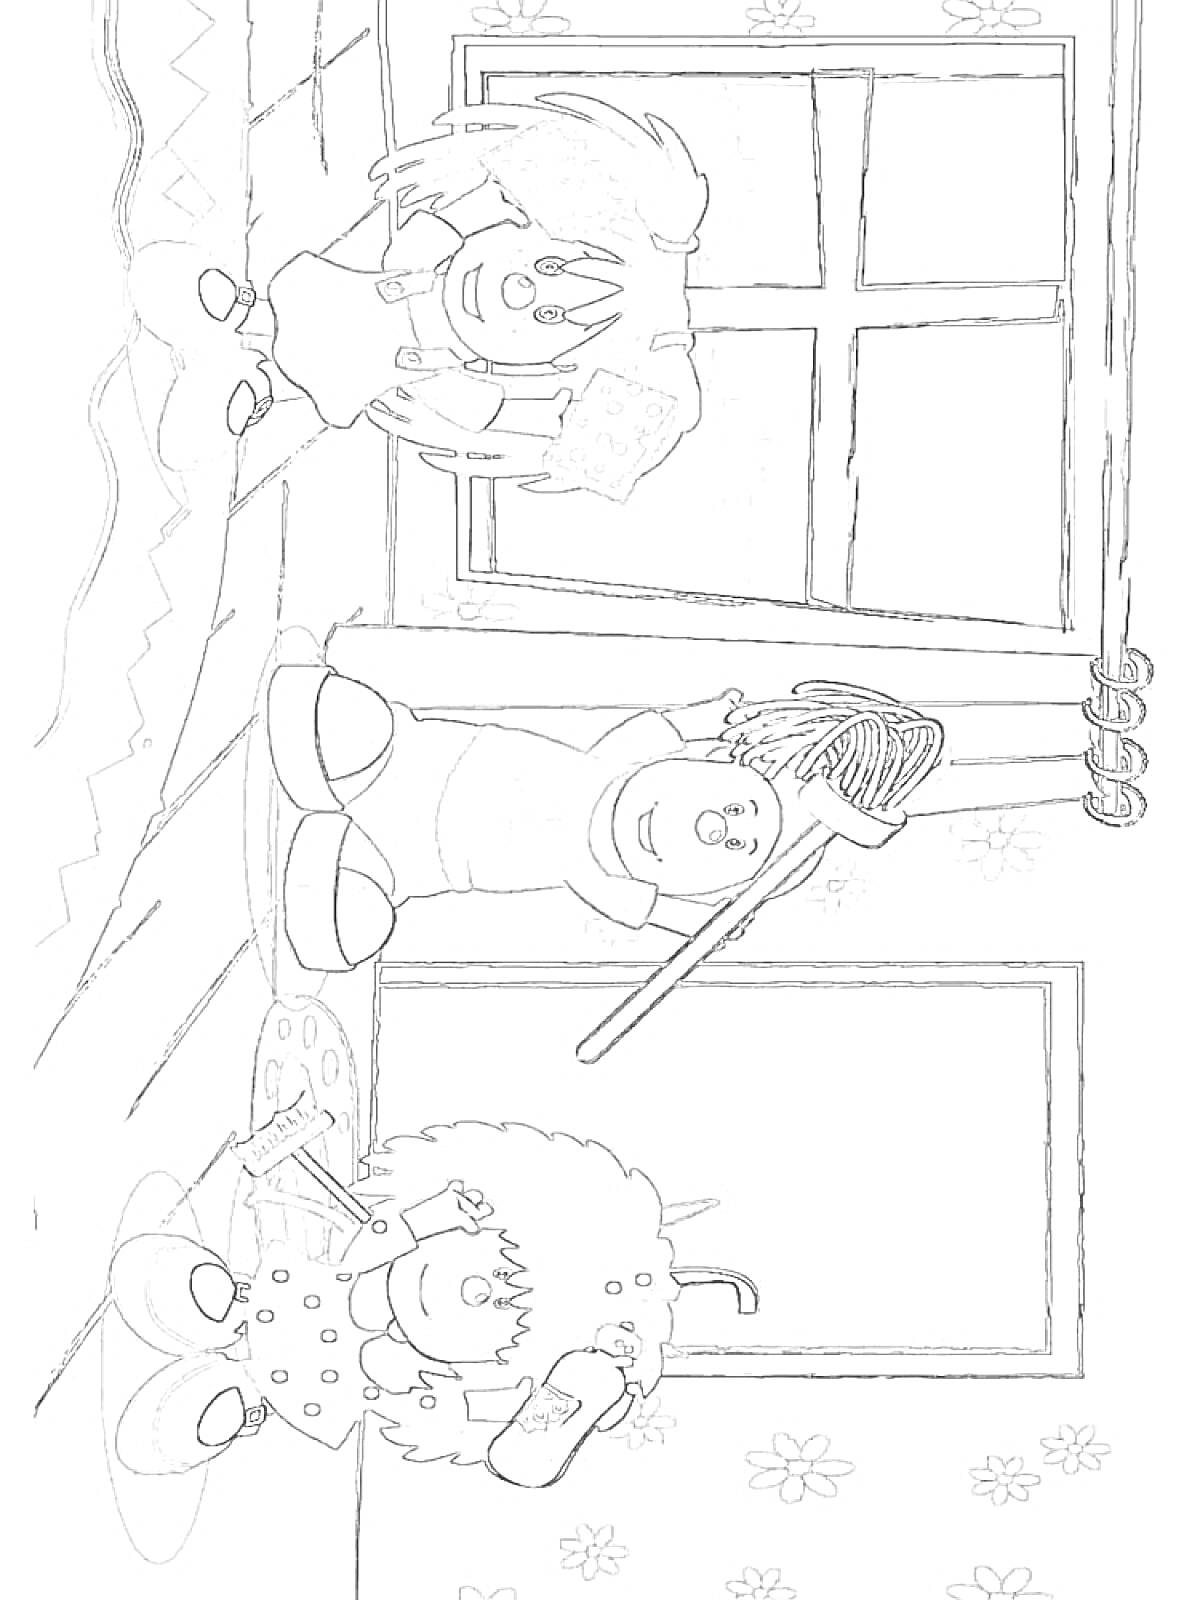 Раскраска Барбарики в комнате с окном, девочка с феном и расческой, мальчик на полу с кисточкой, ребенок с метелкой и ведром.